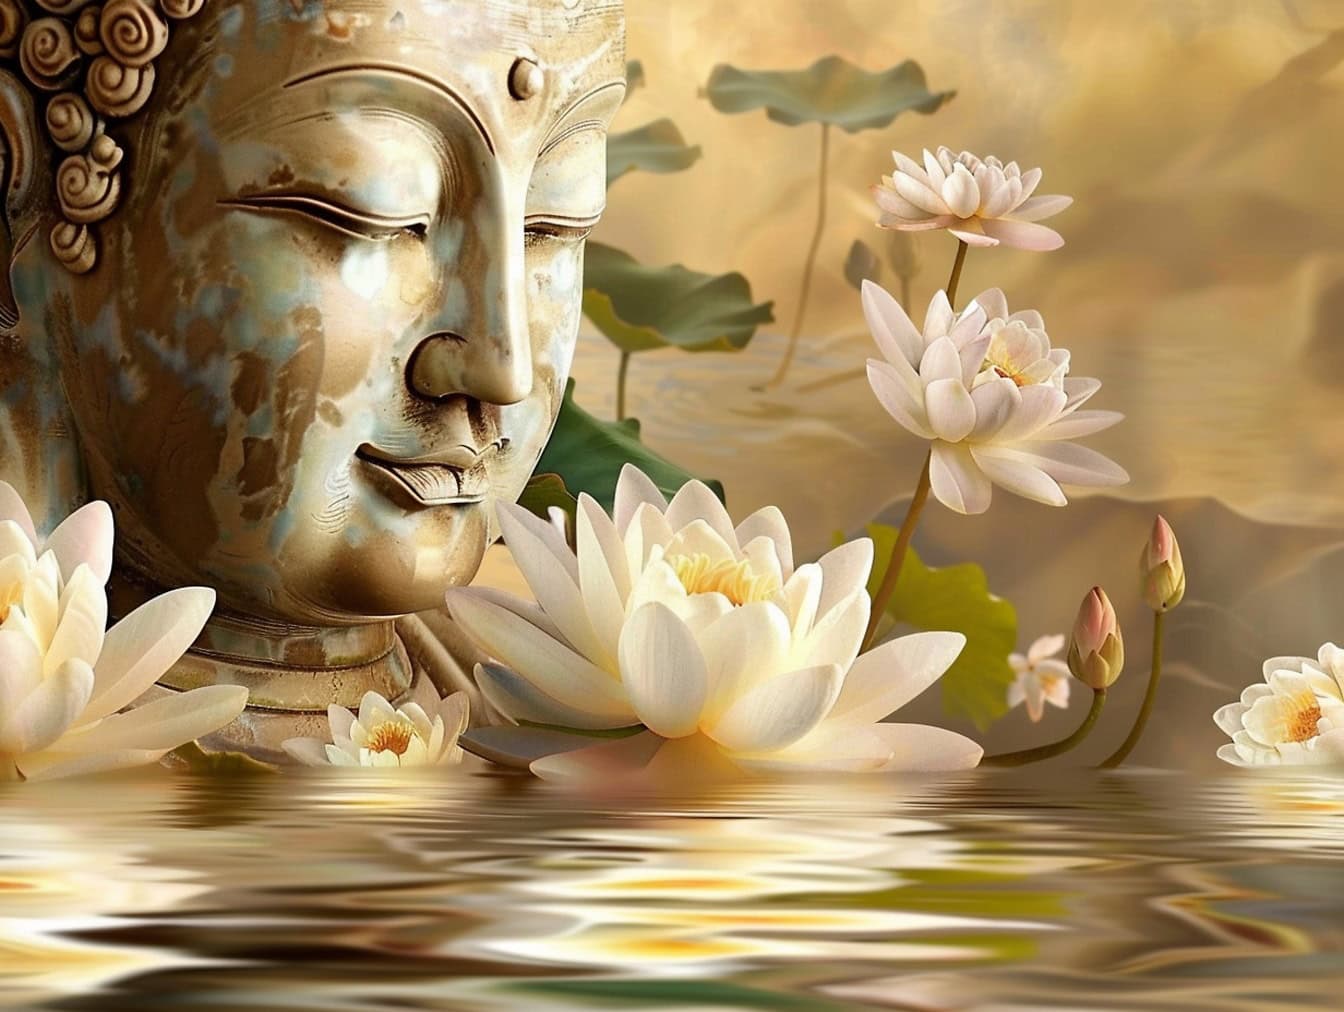 Staty av ett huvud av en Buddha med slutna ögon omgiven av vita lotusblommor